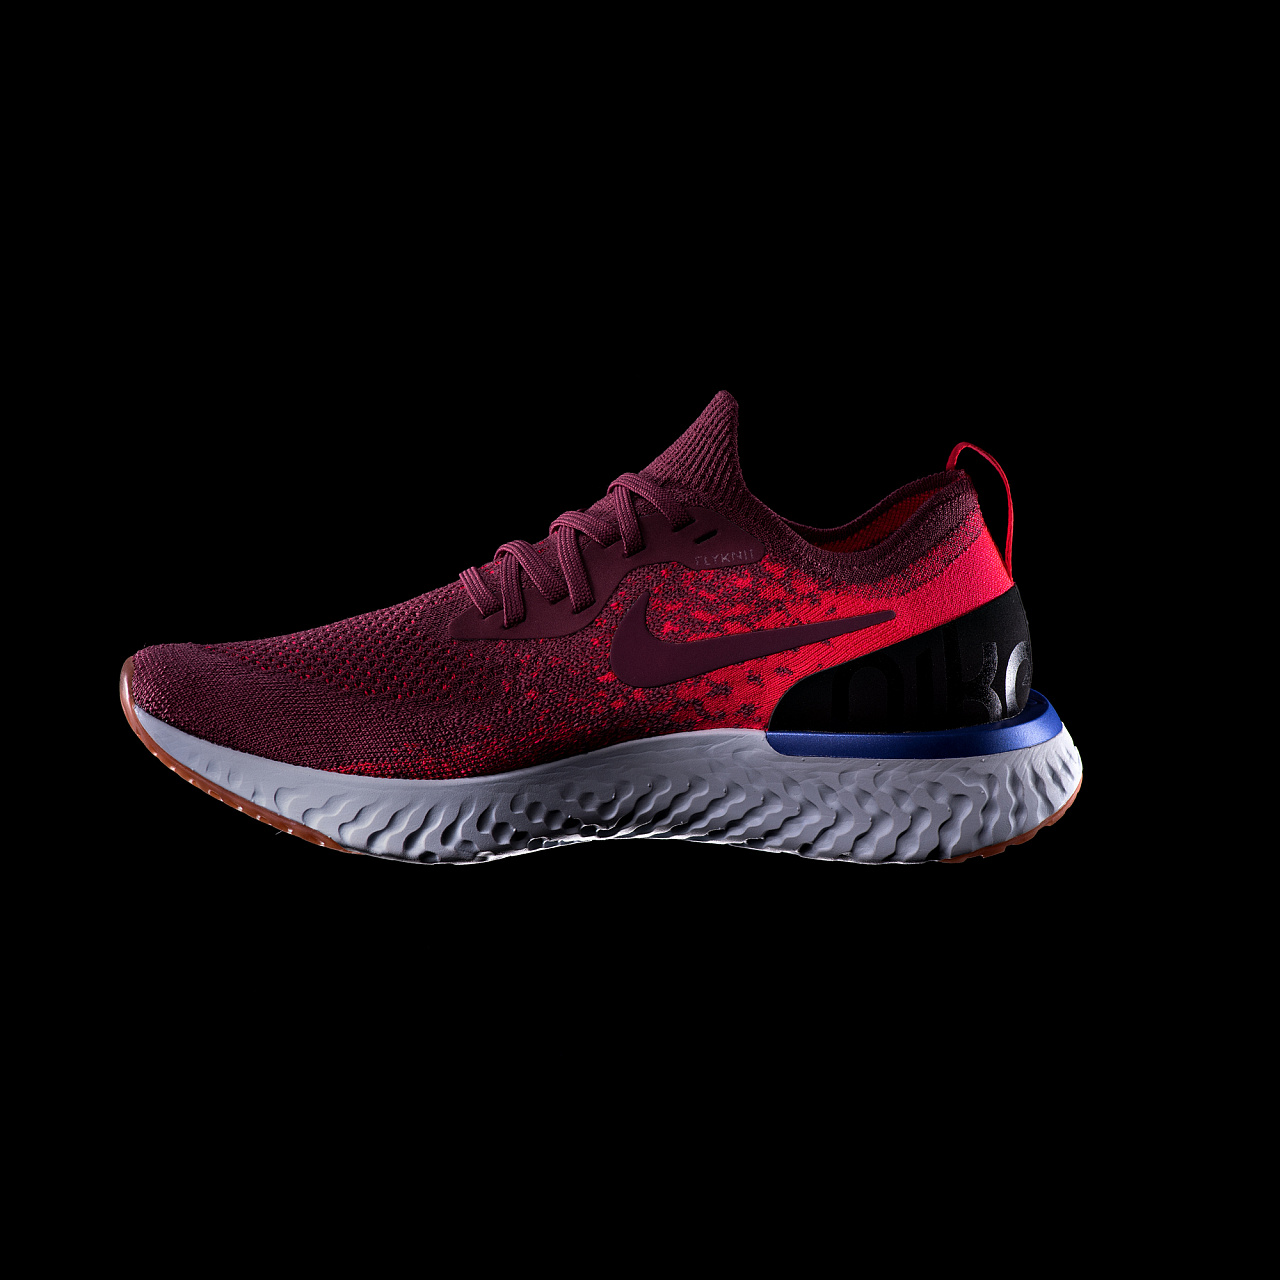 突破极限...耐克发布ZoomX Vaporfly NEXT% - Nike_耐克足球鞋 - SoccerBible中文站_足球鞋_PDS情报站